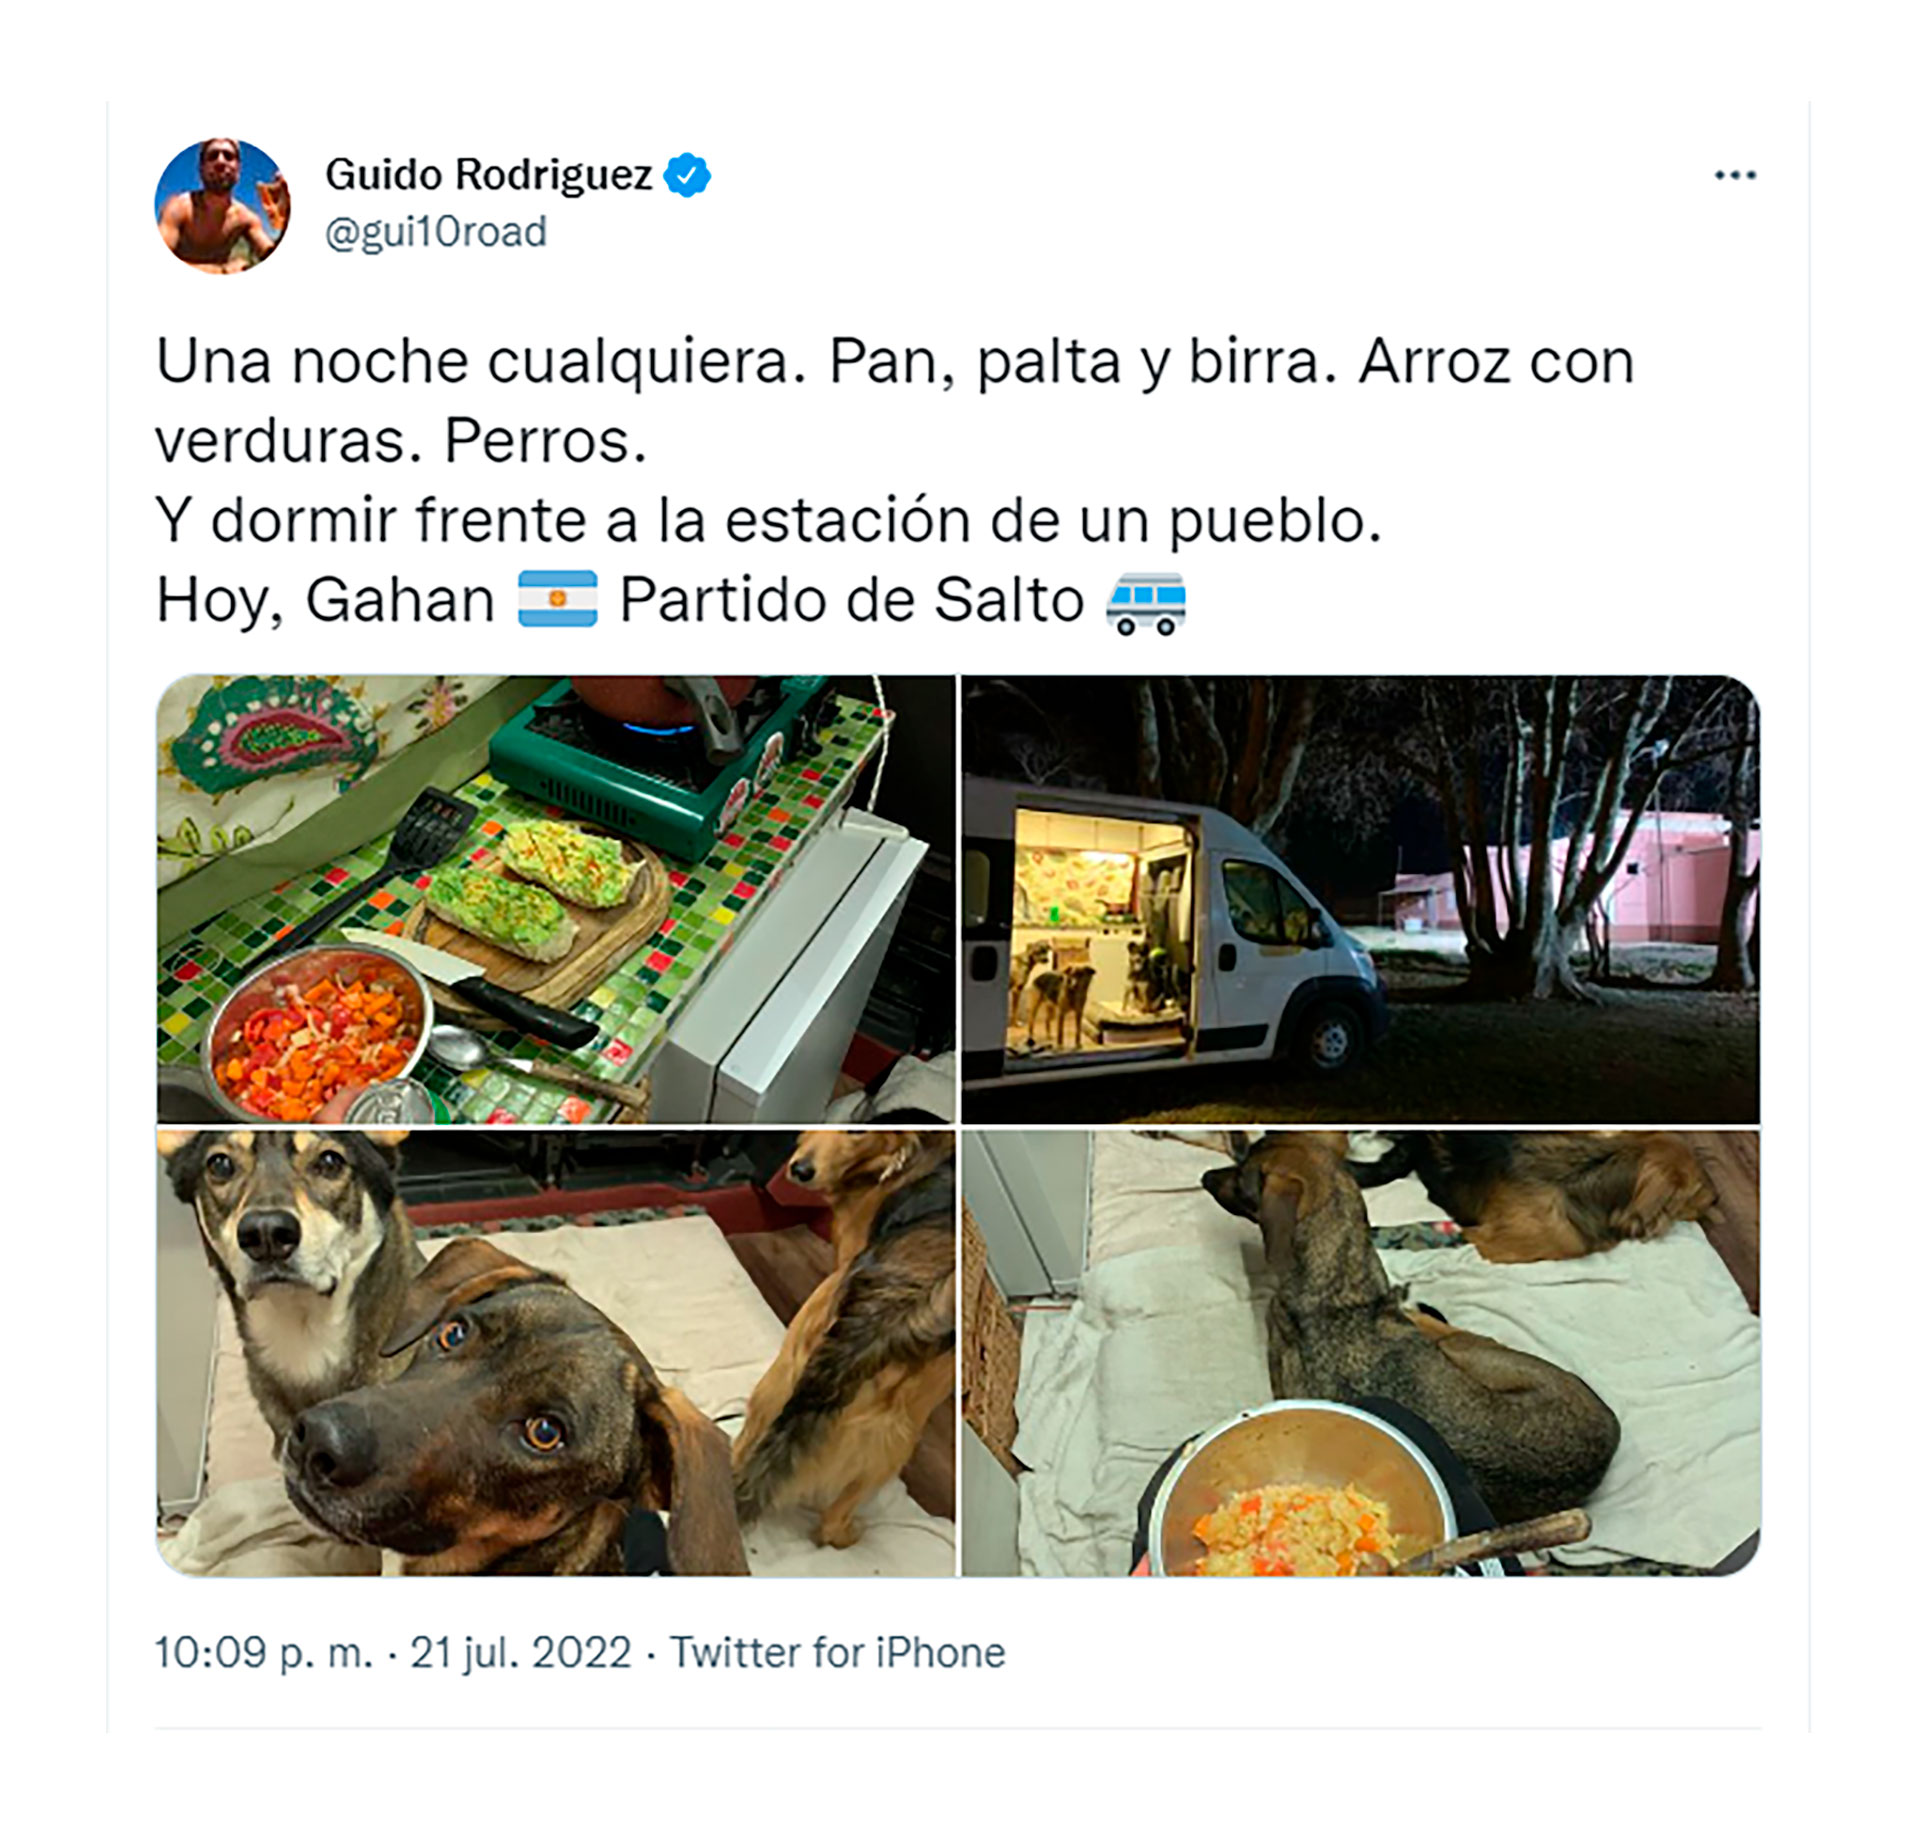 Uno de los tuits en los que Guido cuenta sus descubrimientos en los pueblos de Buenos Aires, en este caso, Las Marianas 